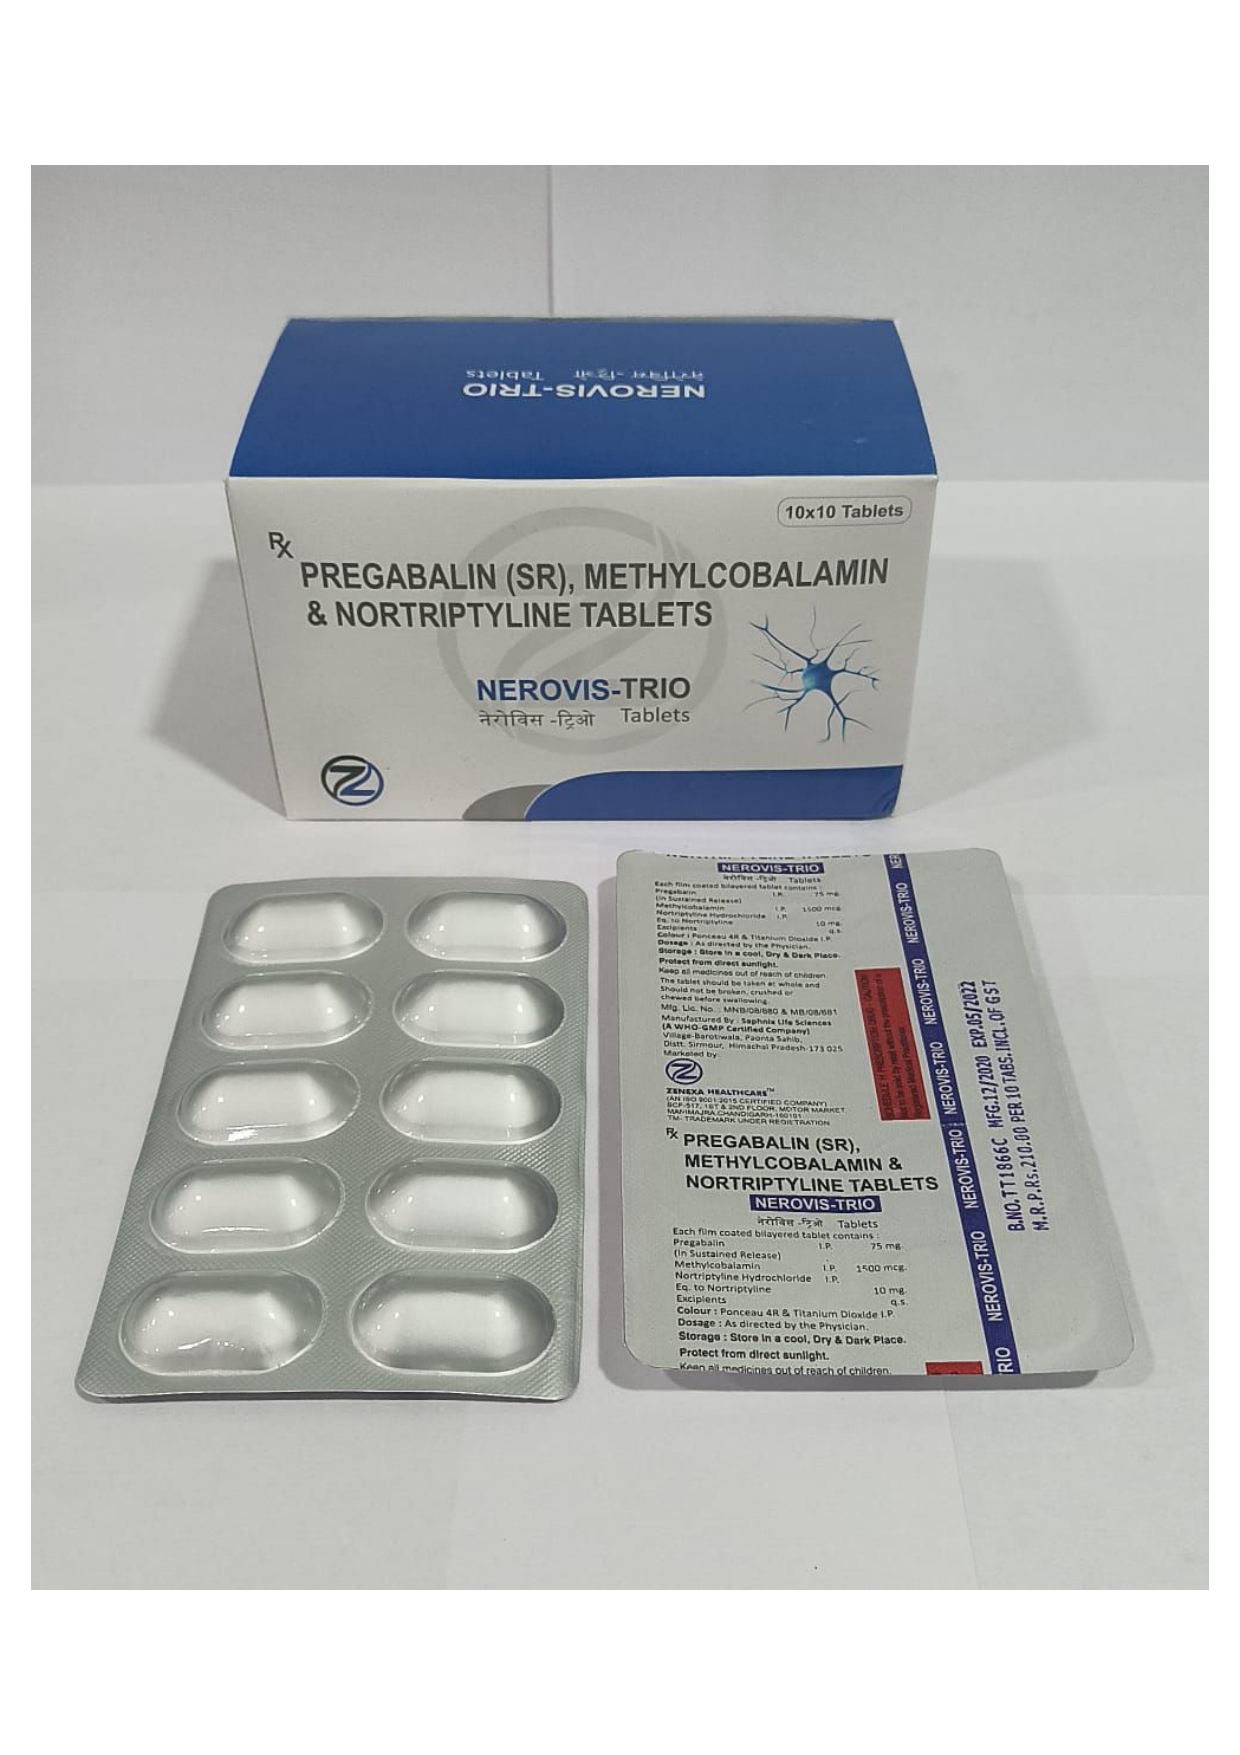 methylcobalamin 1500mcg + pregabalin 75mg + nortriptyline 10mg tablets